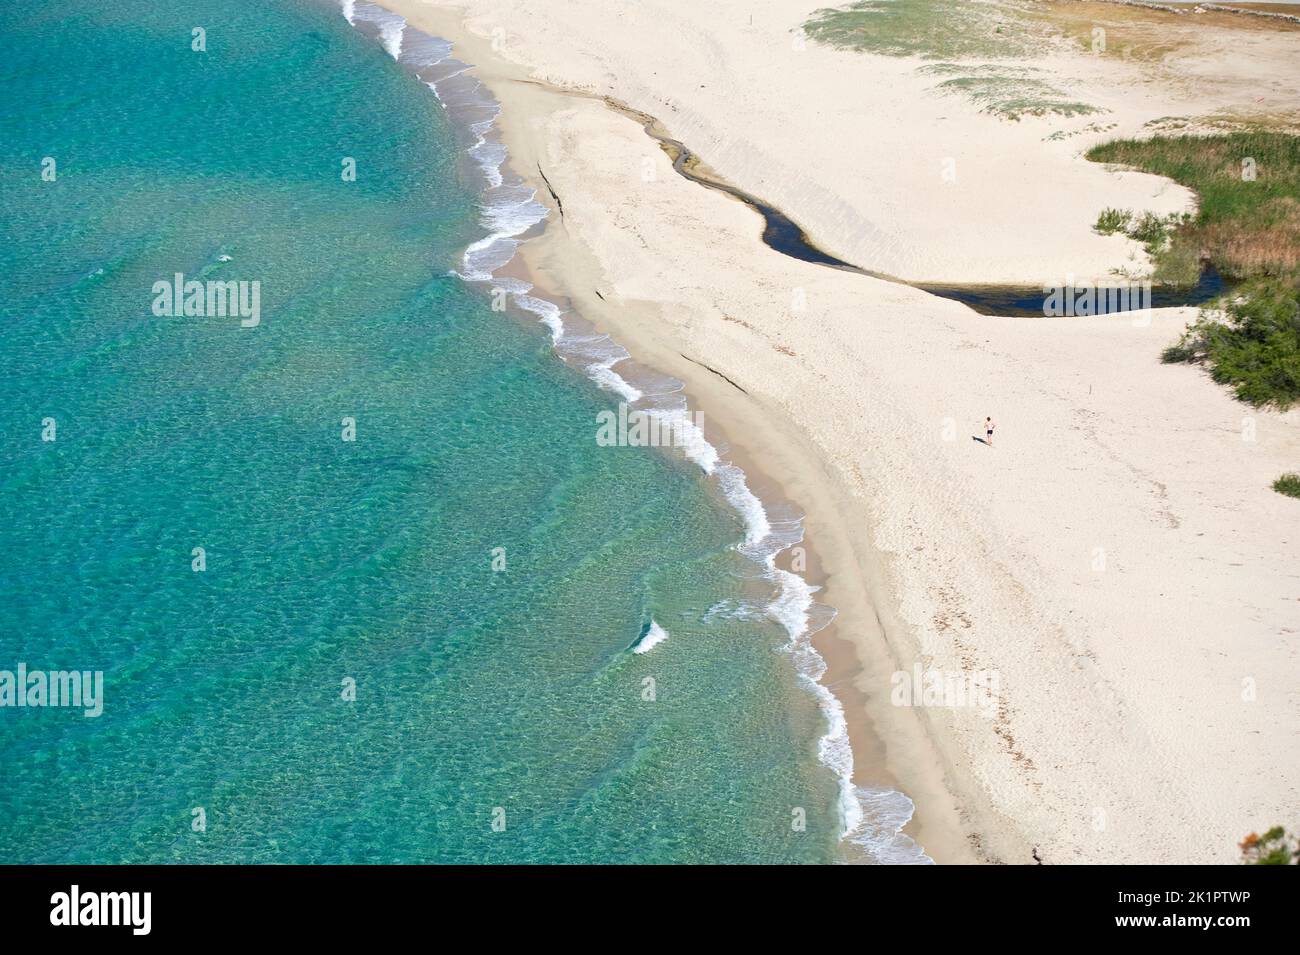 Solanas beach, Sinnai, south Sardinia, Italy, Europe Stock Photo